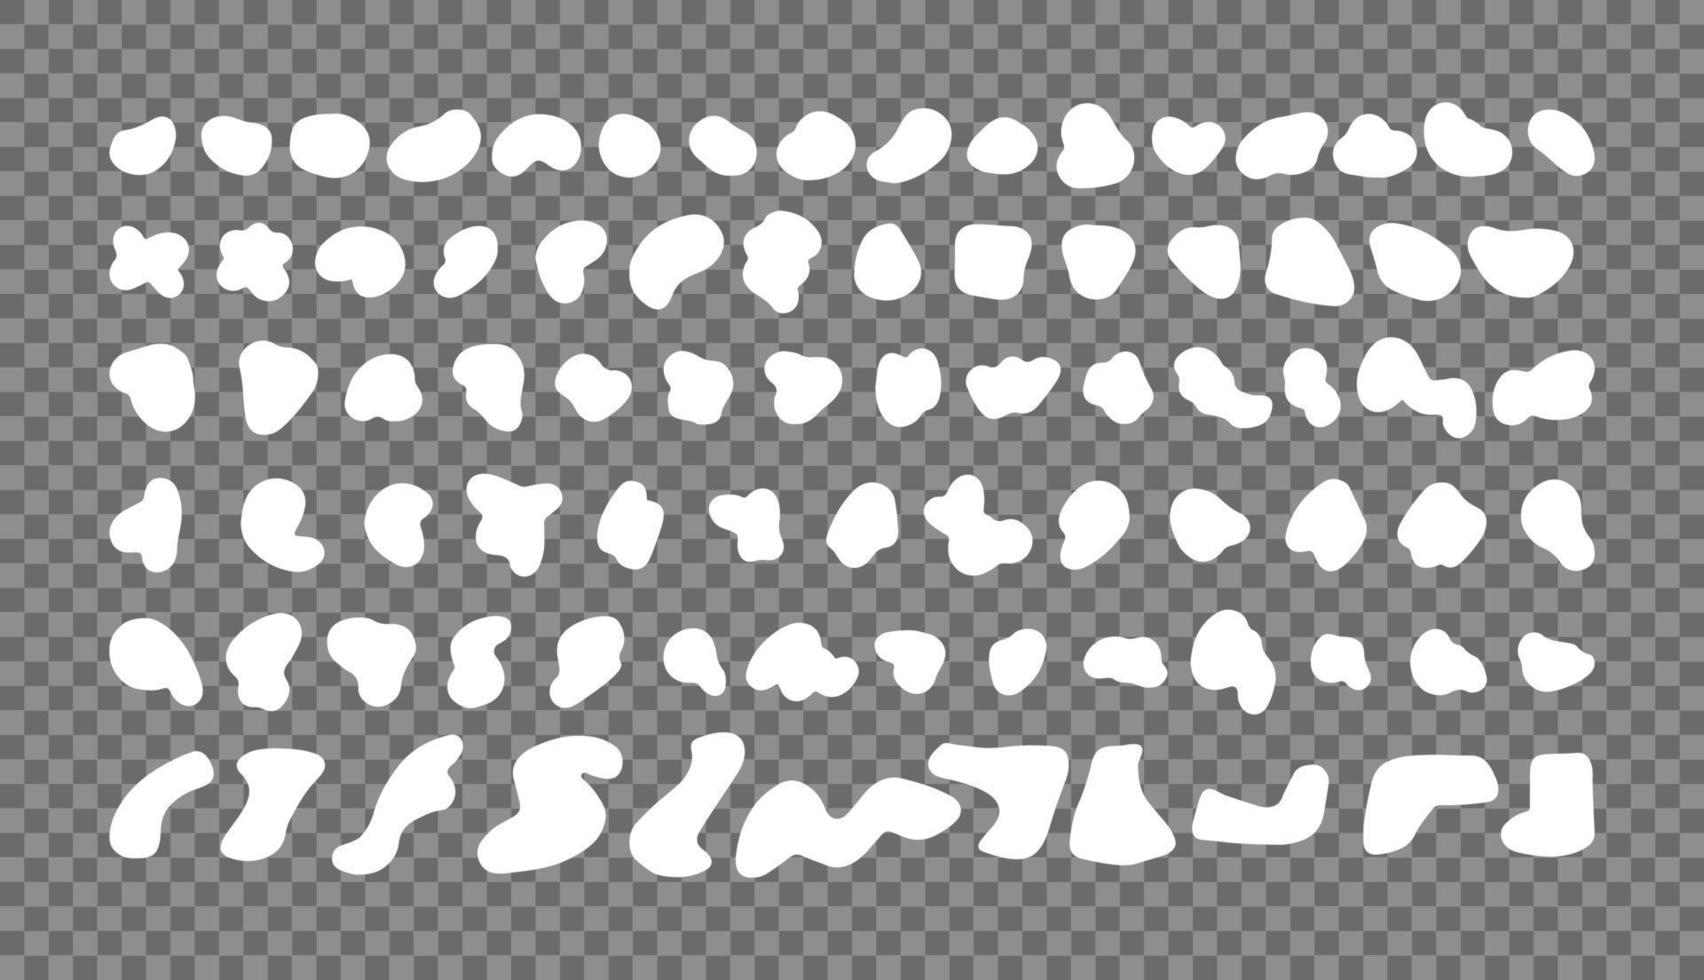 slumpmässiga vita former på en transparent bakgrund. organisk abstrakt splodge element monokrom samling. vektor